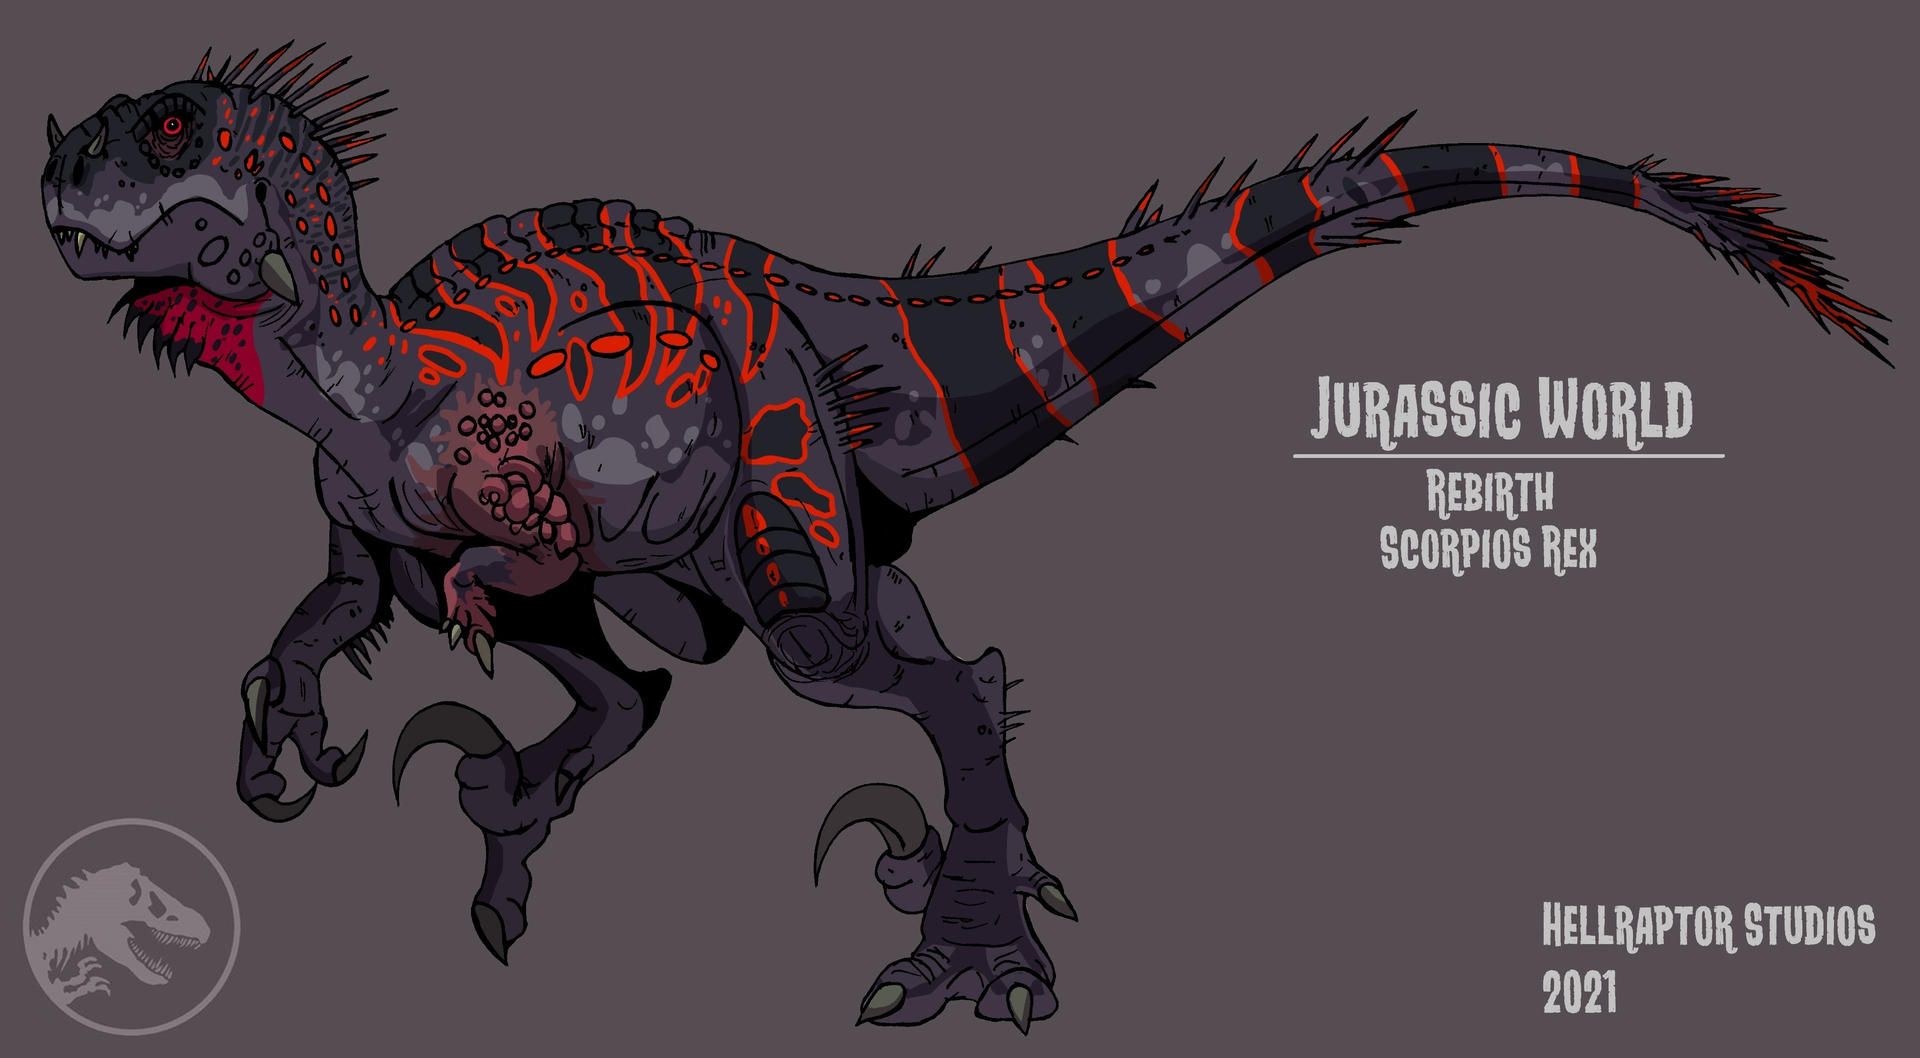 Jurassic World Rebirth: Scorpios Rex. Jurassic world, Jurassic world t rex, Jurassic park poster